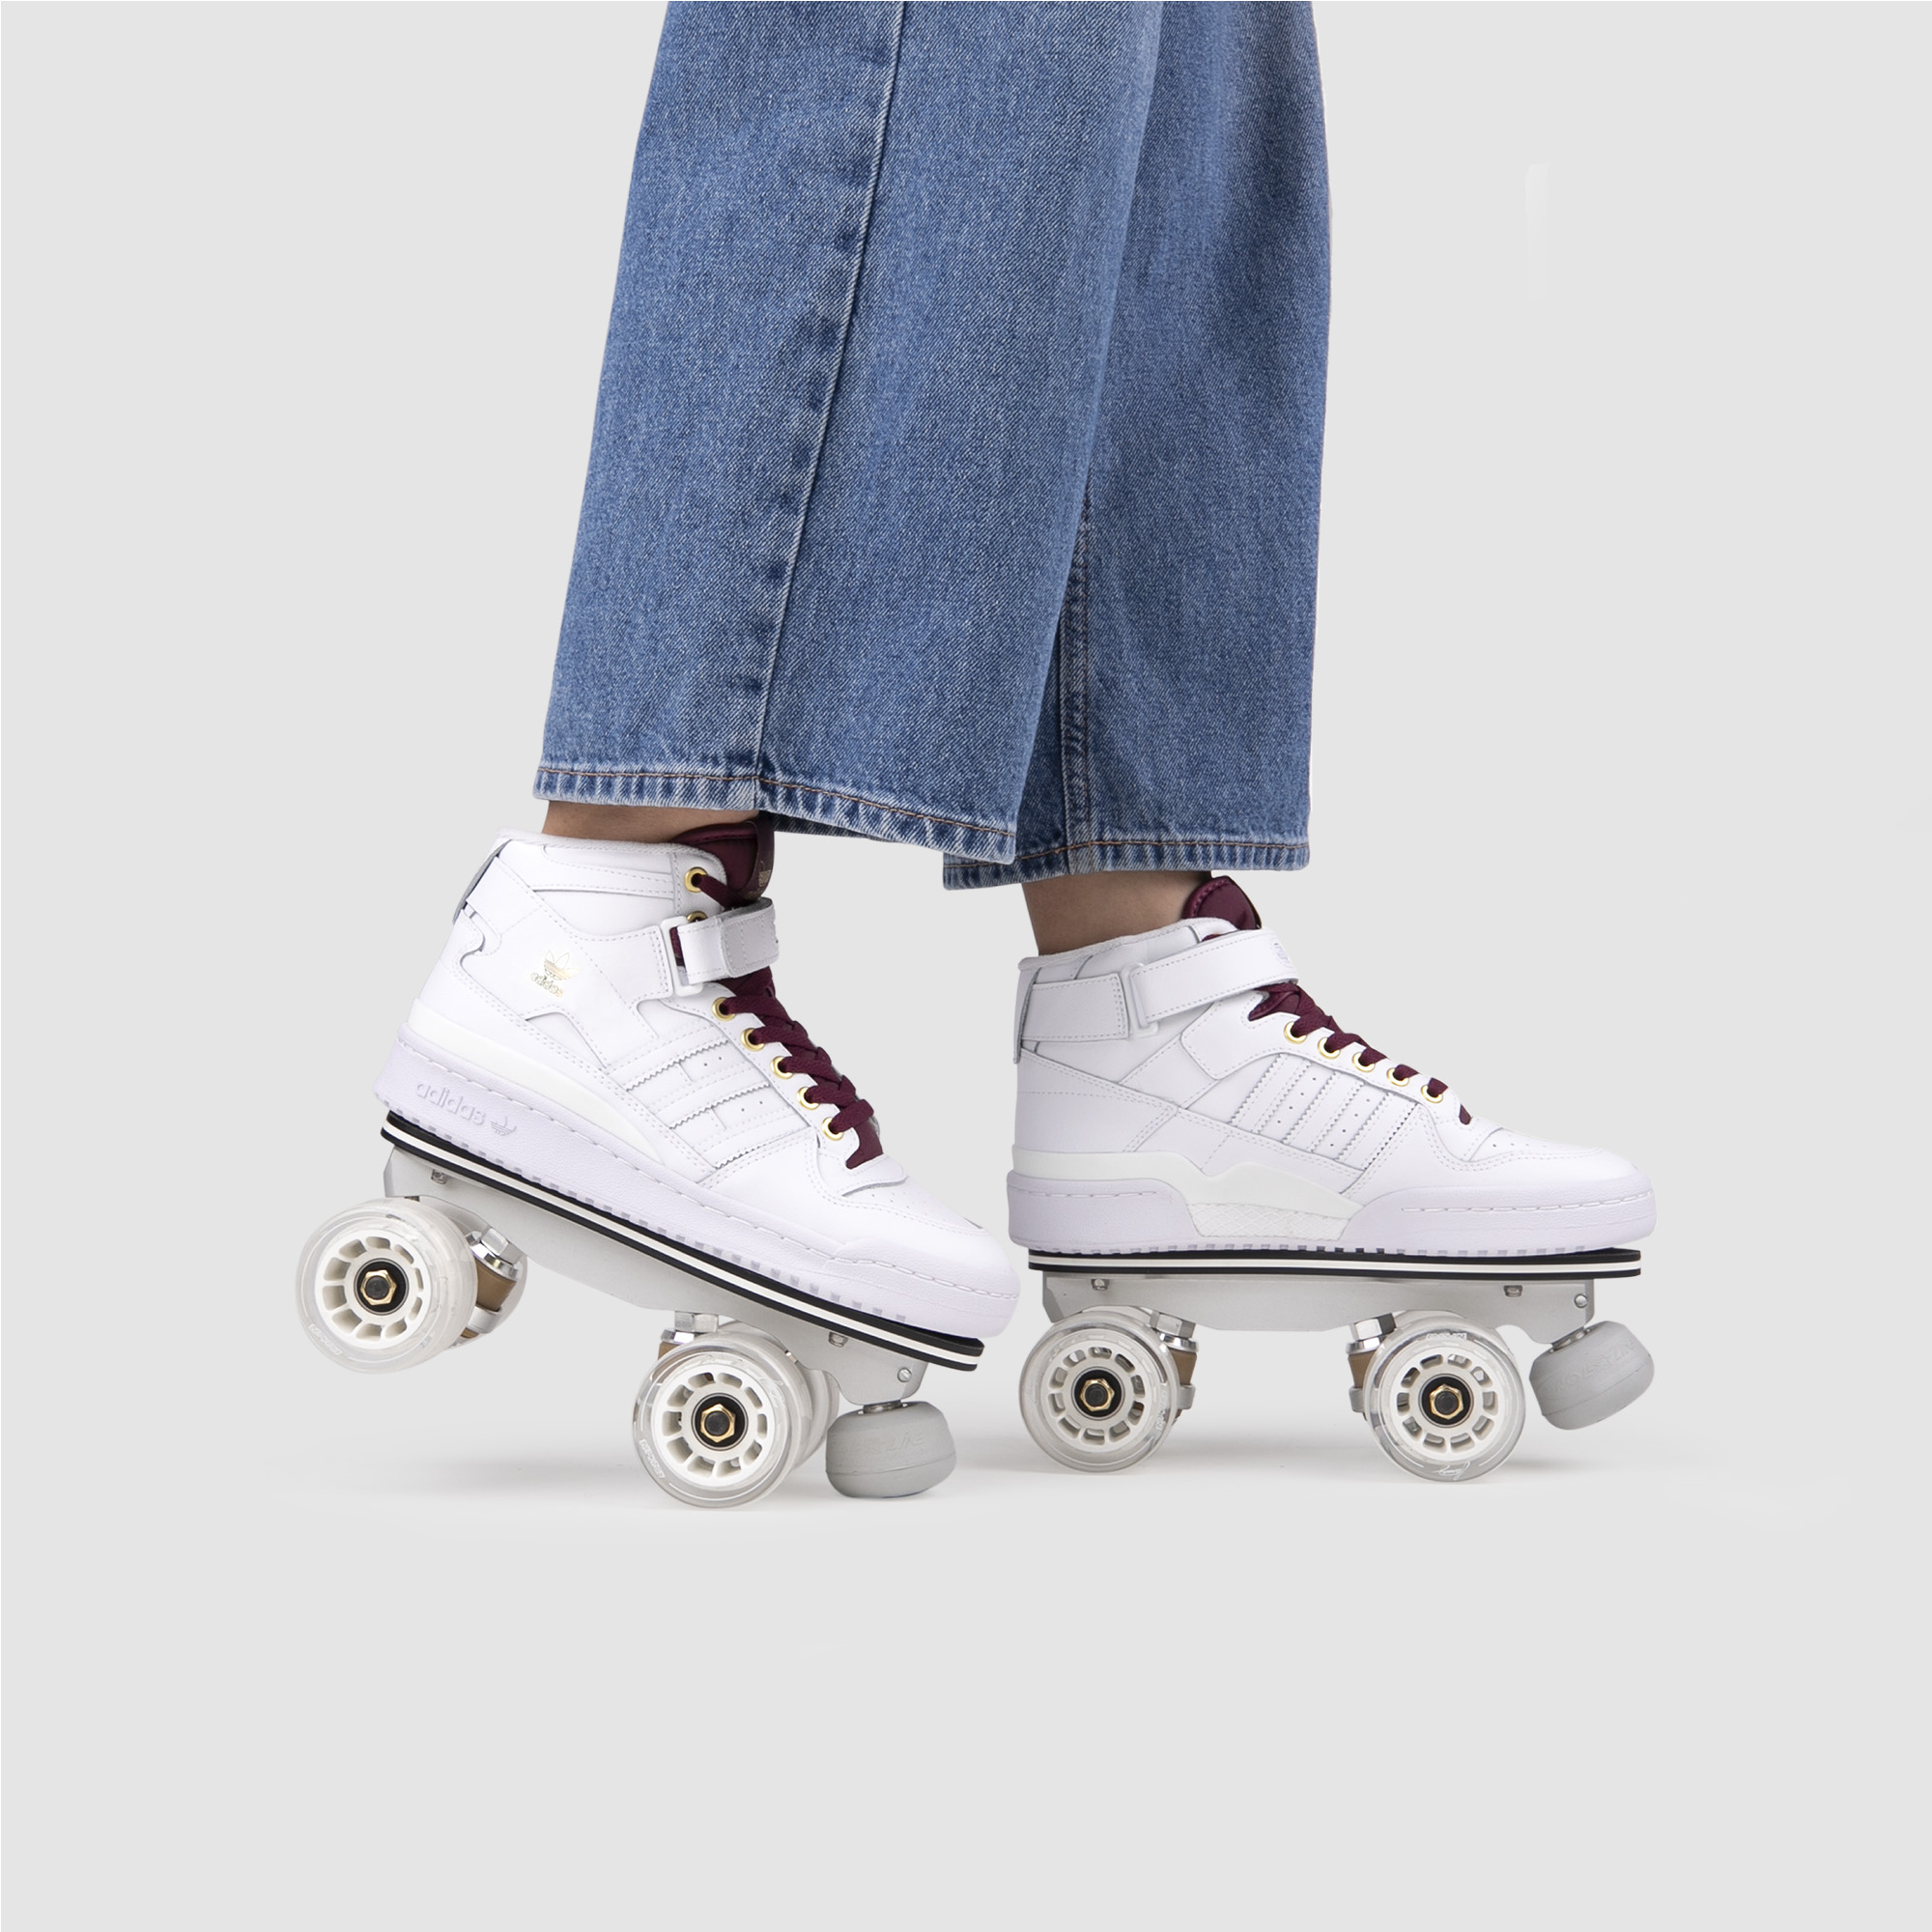 Roller skates pack